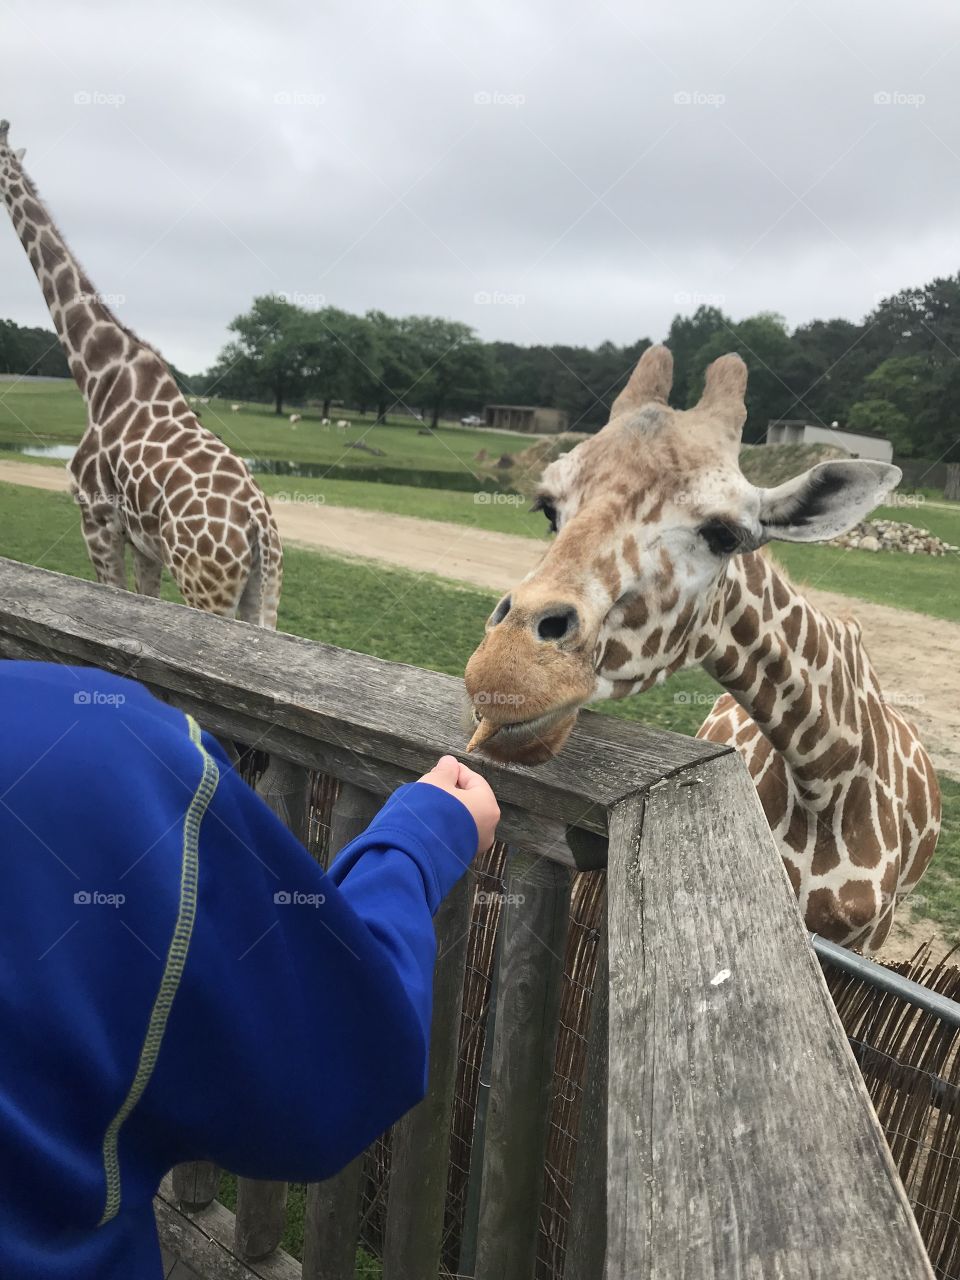 Feeding frenzy with the giraffes